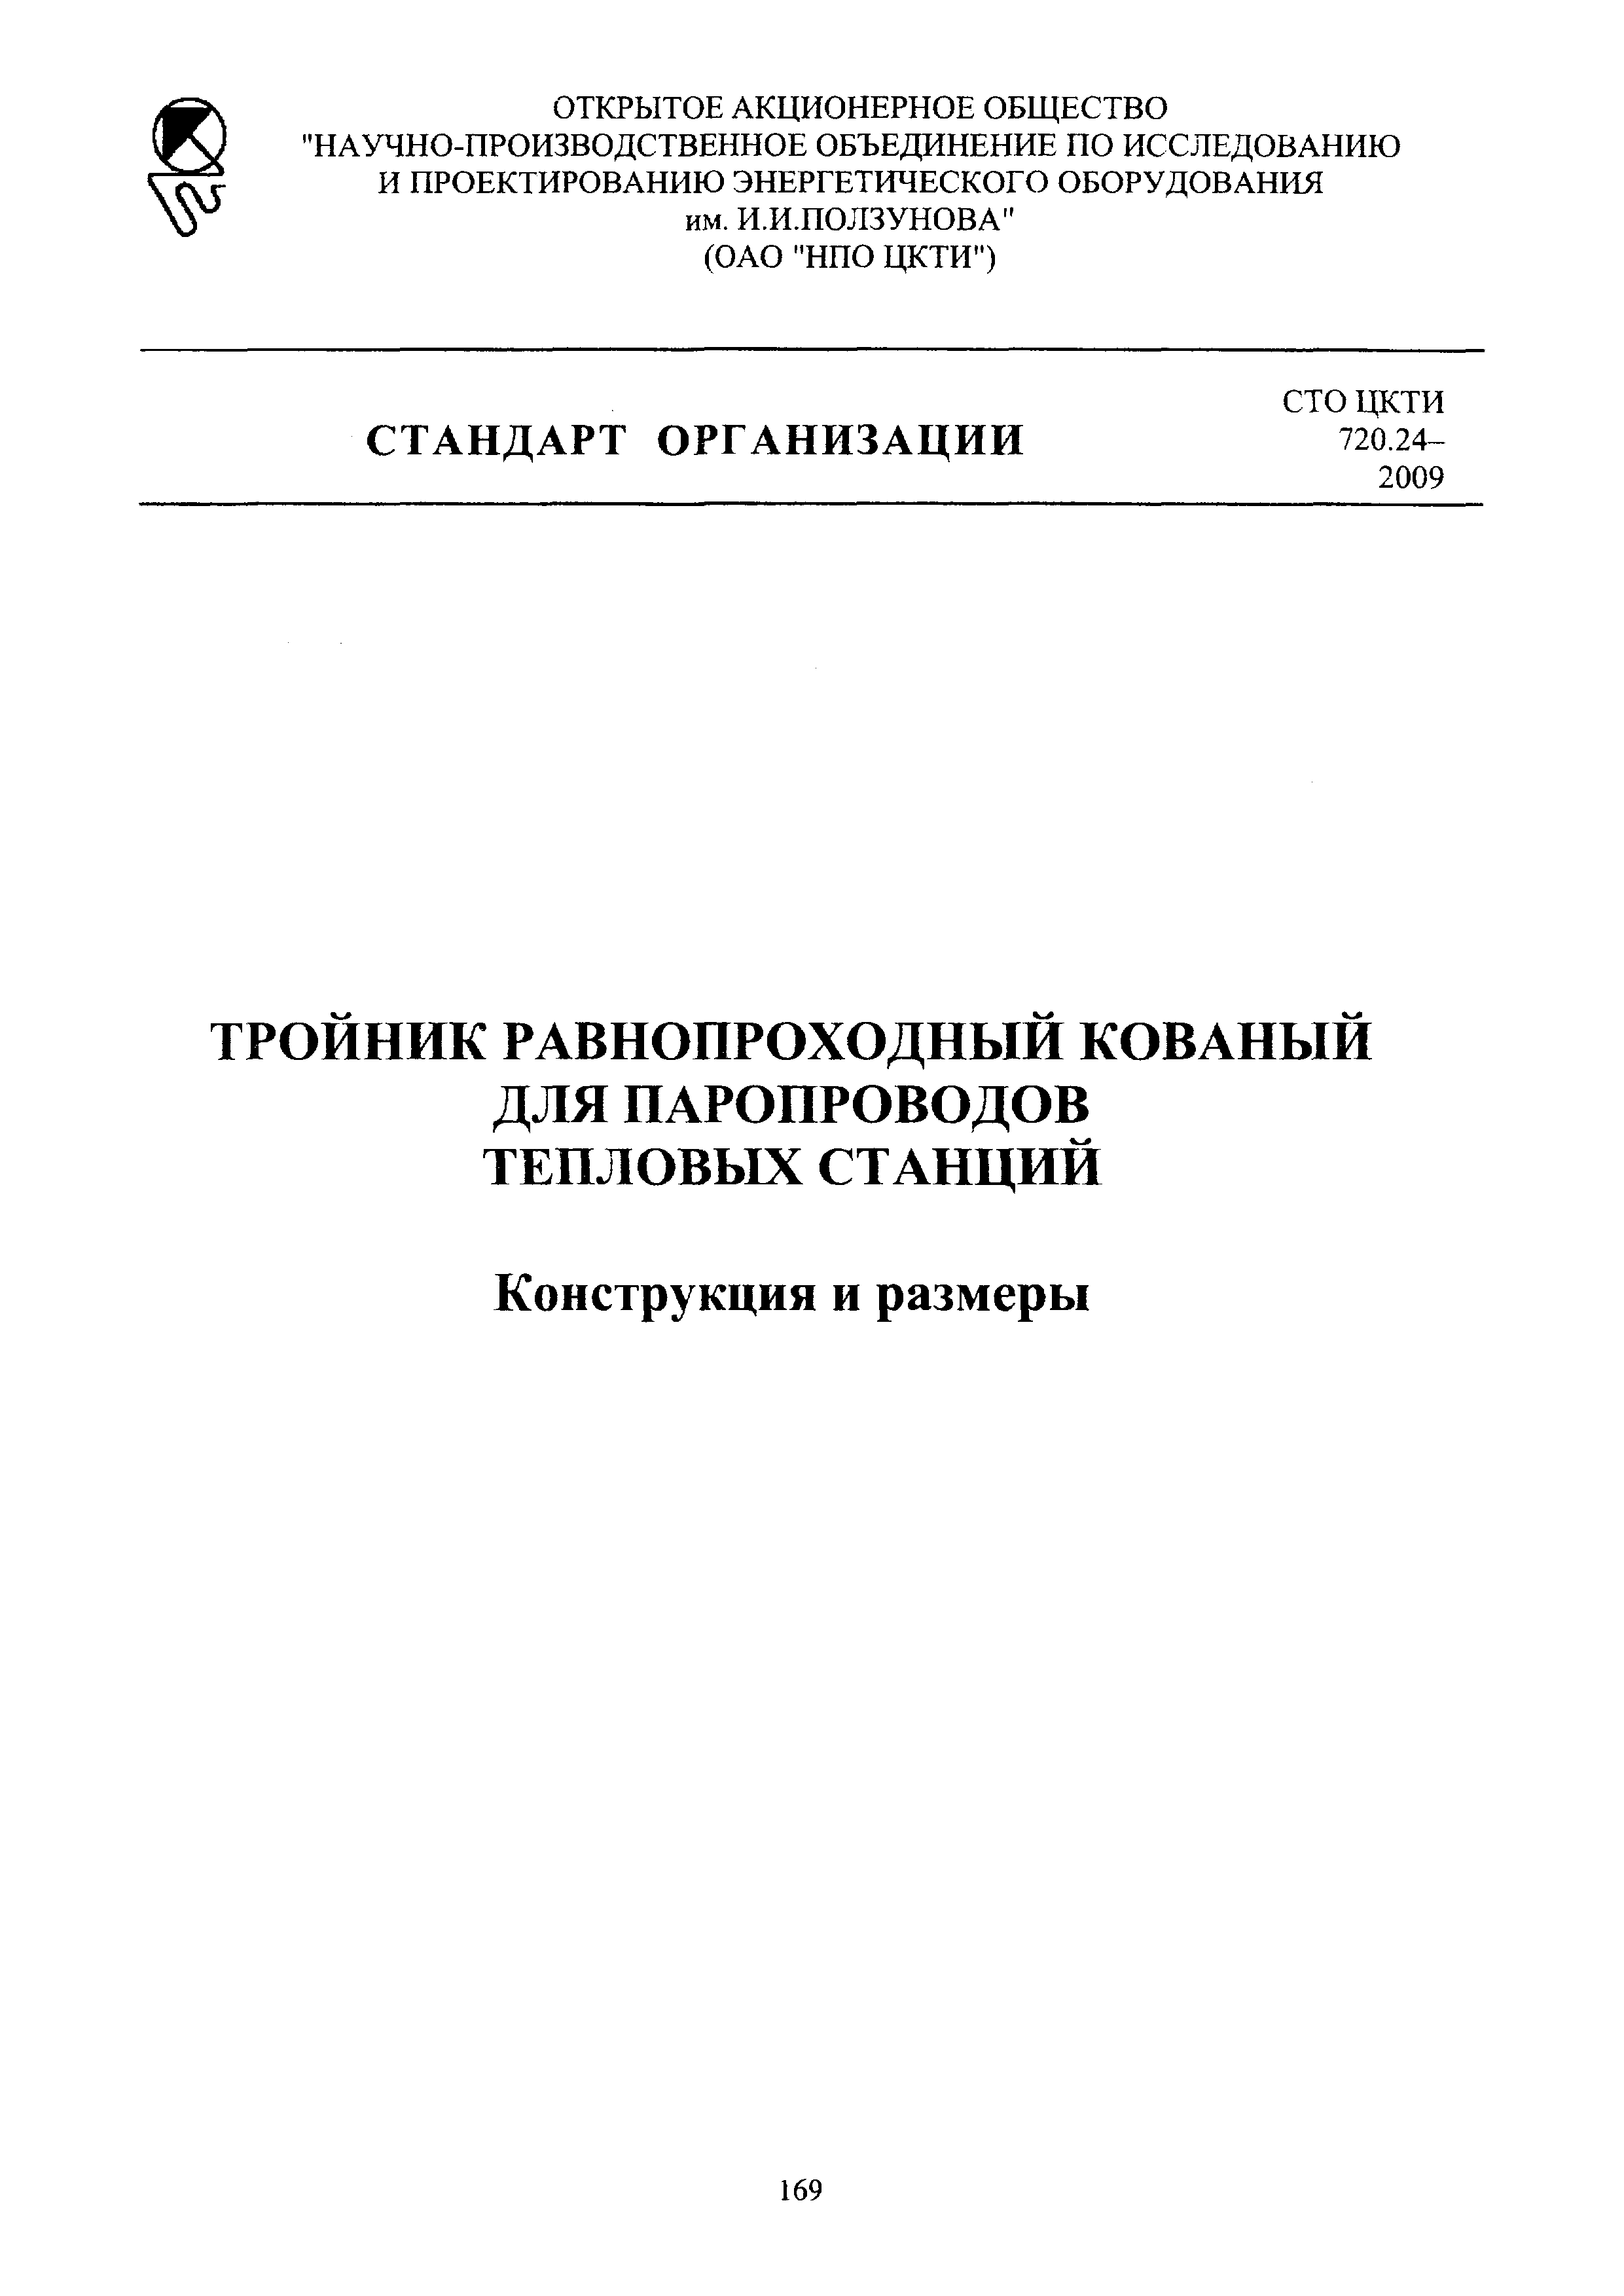 СТО ЦКТИ 720.24-2009